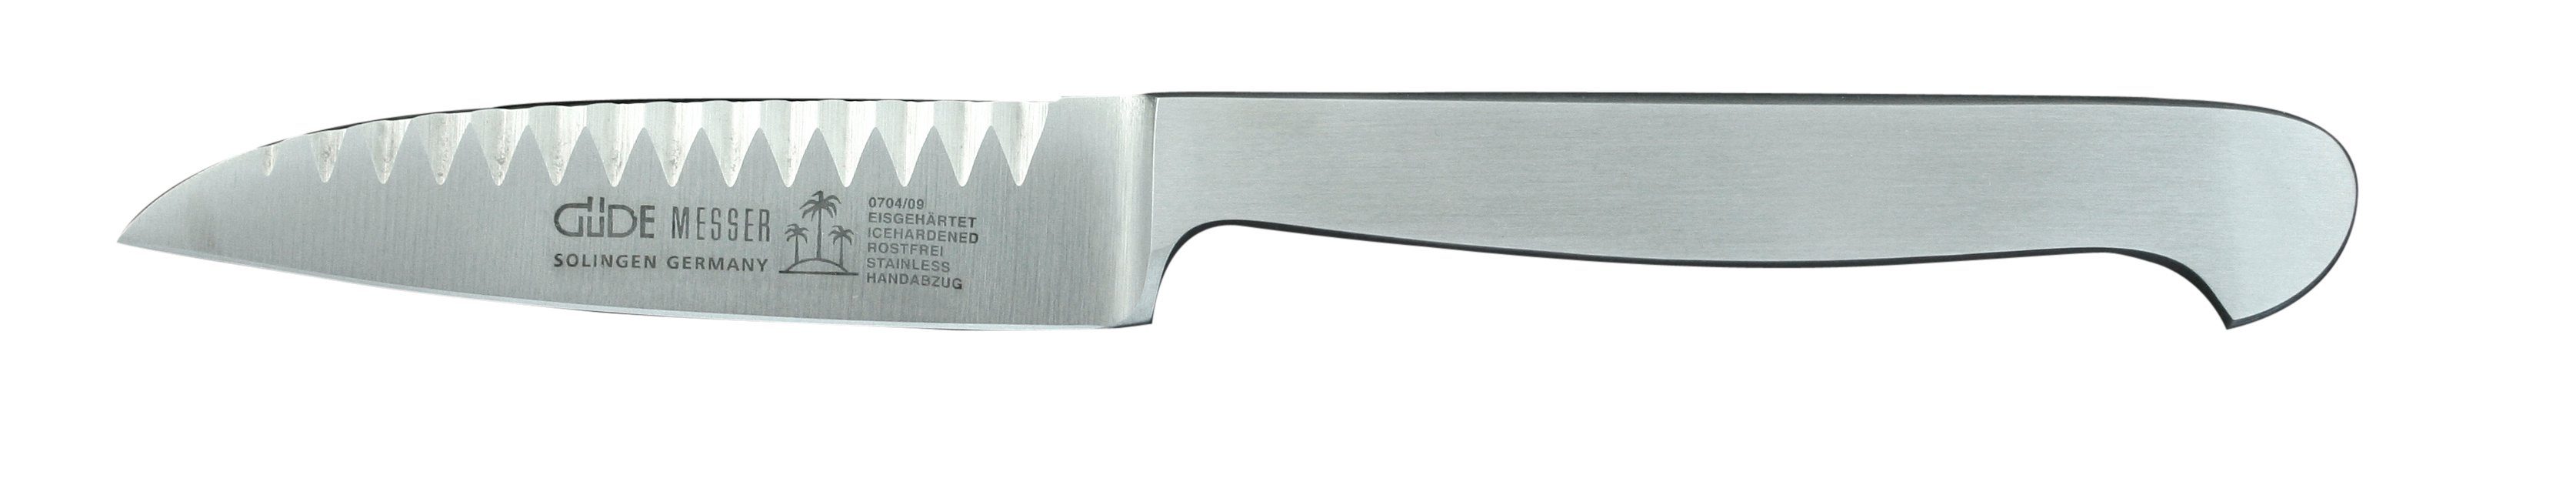 Güde Messer Solingen Gemüsemesser Kappa, Buntschneidemesser 9 cm - Klinge und Griff CVM-Stahl